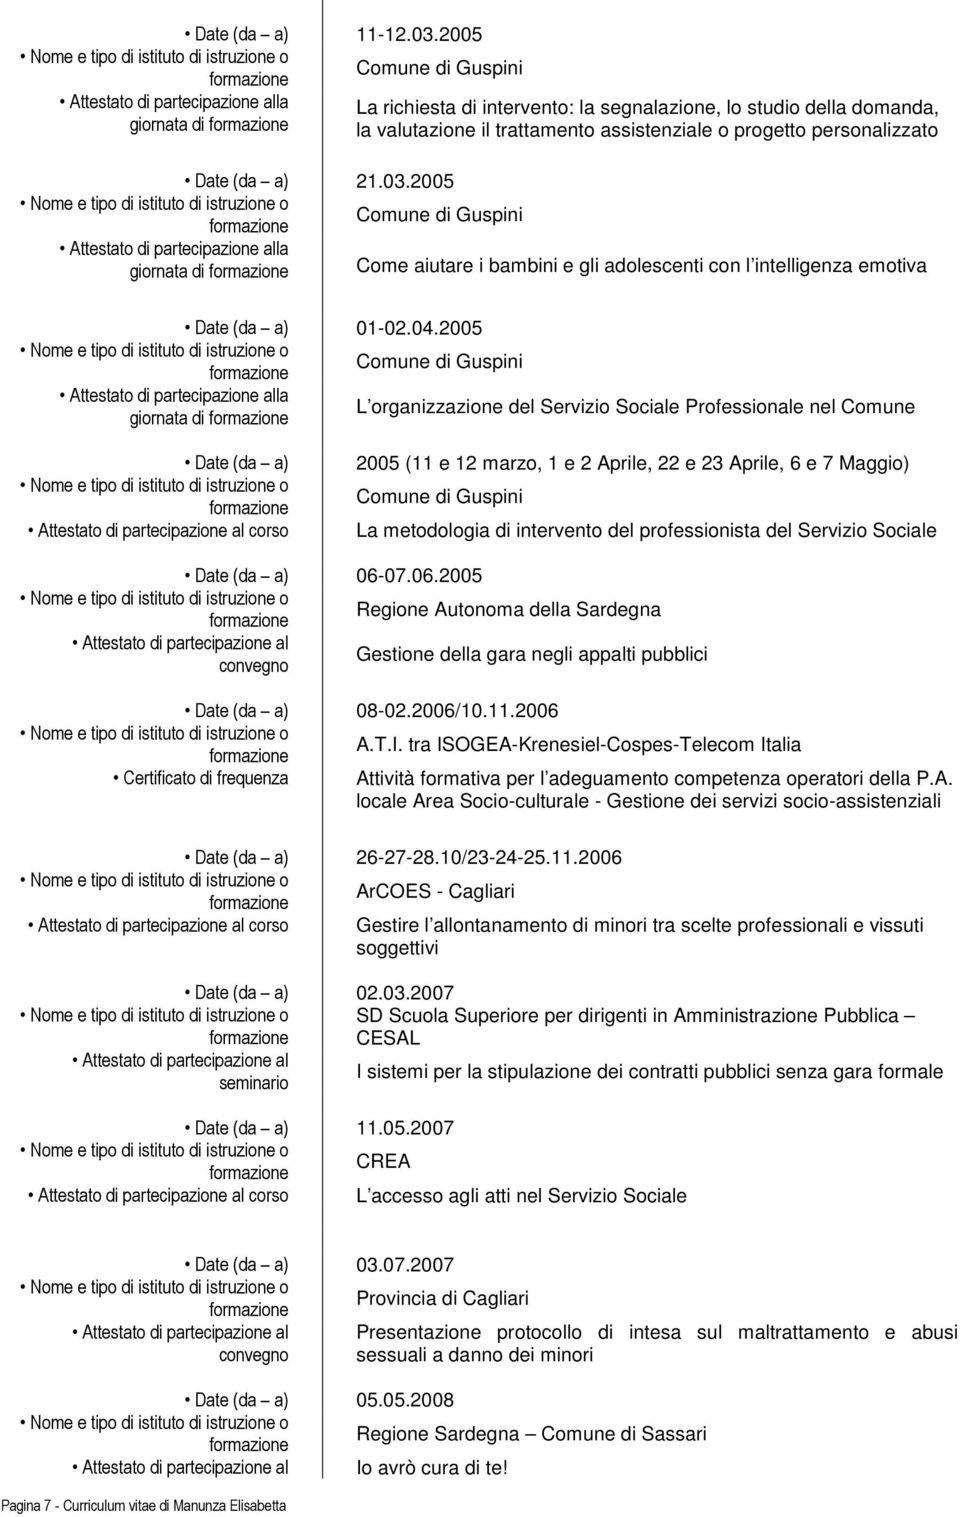 del professionista del Servizio Sociale Date (da a) 06-07.06.2005 Regione Autonoma della Sardegna Gestione della gara negli appalti pubblici Date (da a) 08-02.2006/10.11.2006 A.T.I.